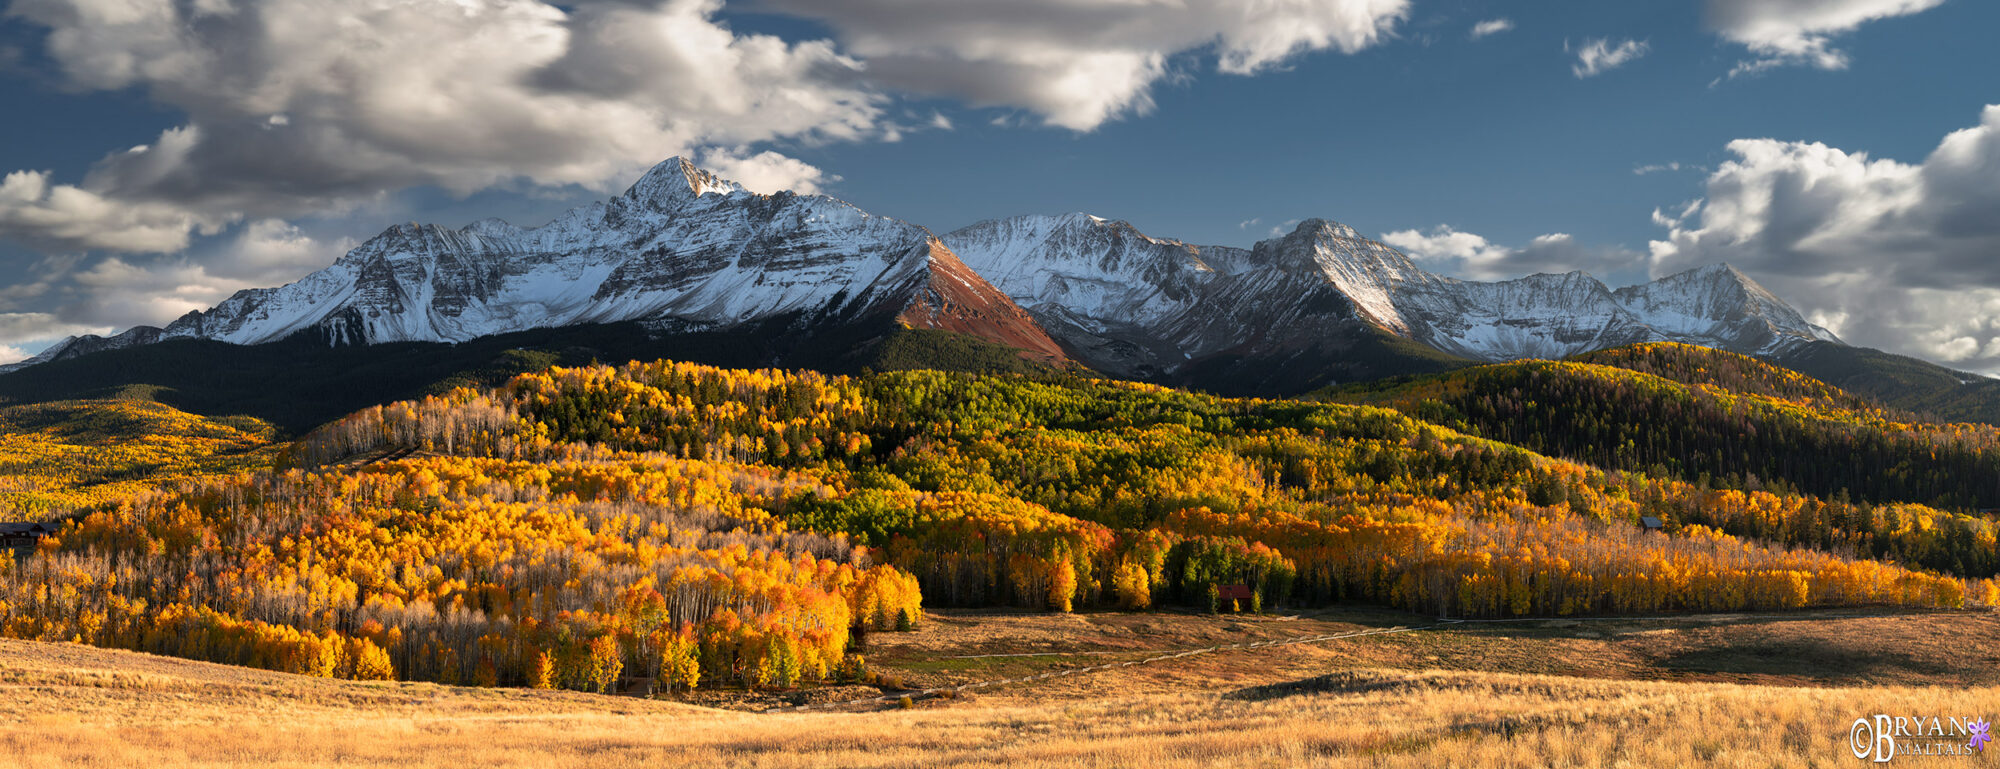 wilson peak telluride fall colors panorama